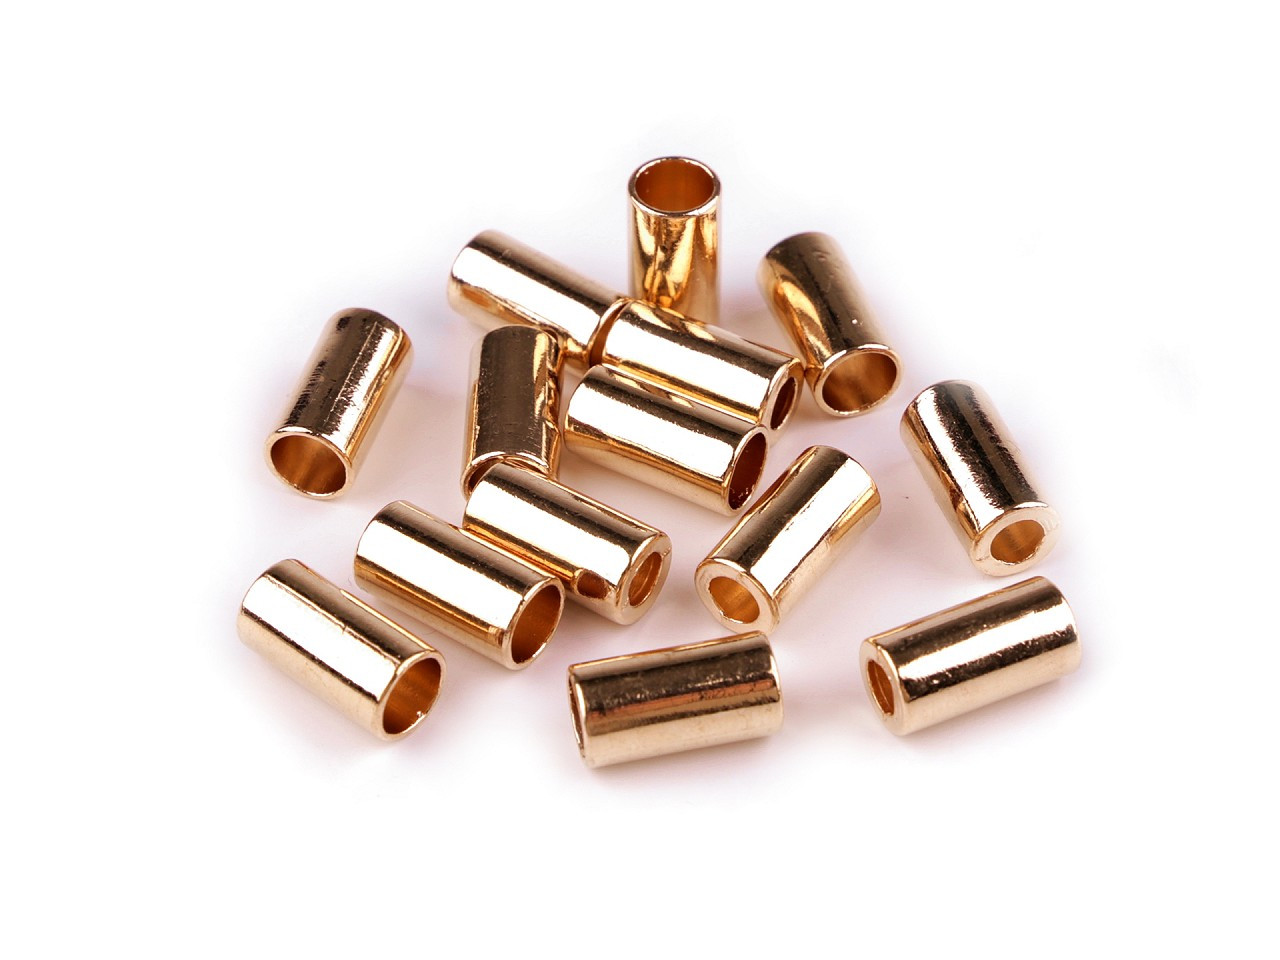 Kovová koncovka na šňůru Ø3,5 mm, Ø5,5 mm, barva 2 (Ø3,5 mm) růžové zlato